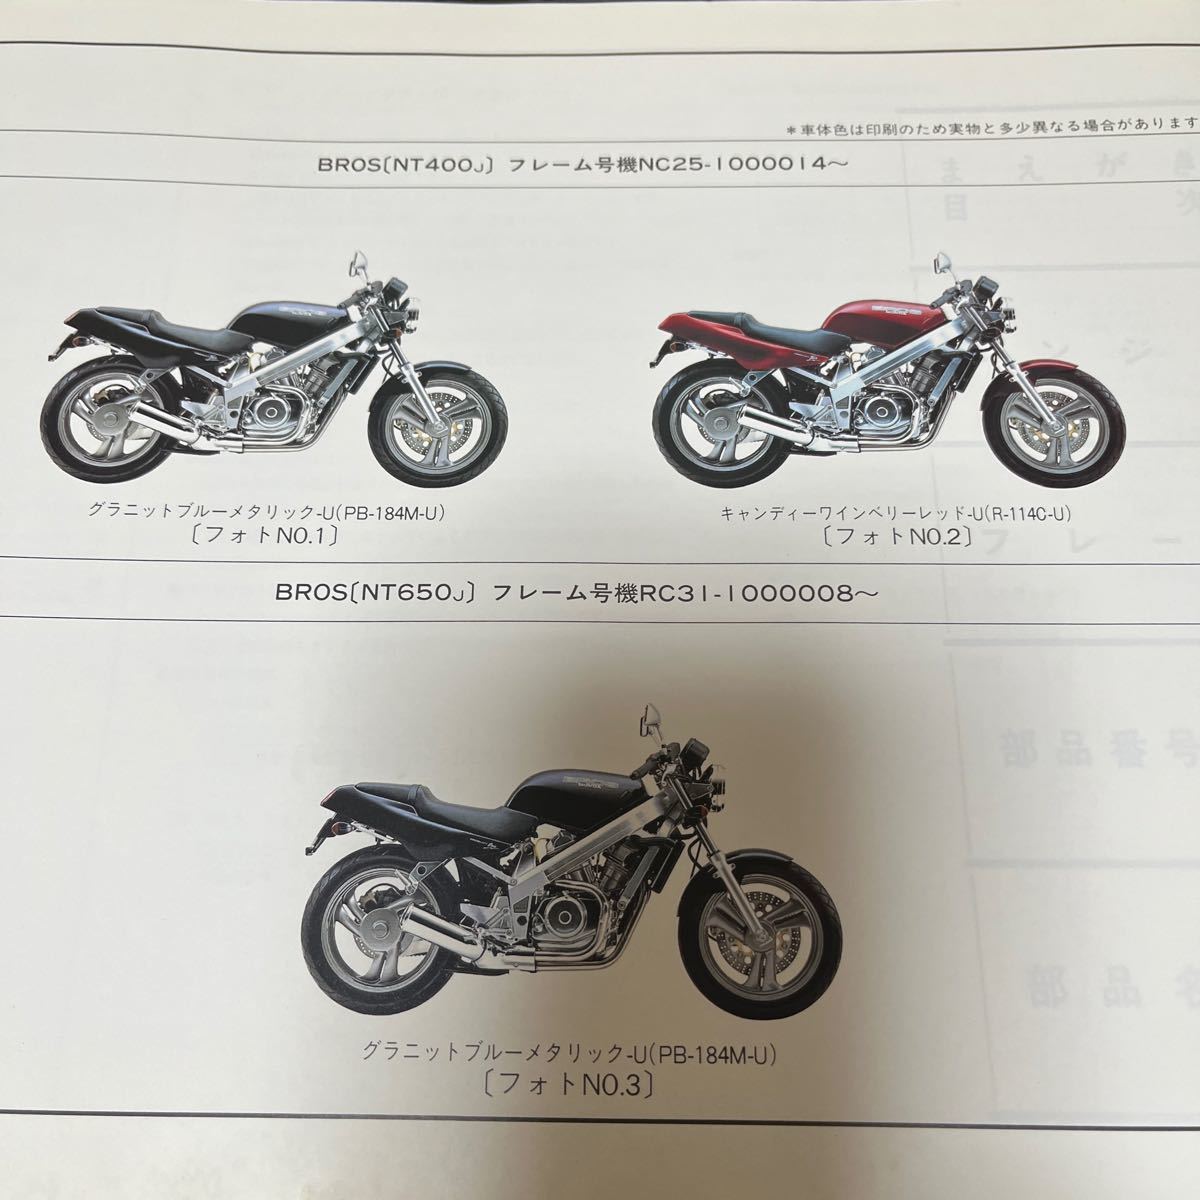 HONDA мотоцикл список запасных частей каталог запчастей BROS 1 версия 